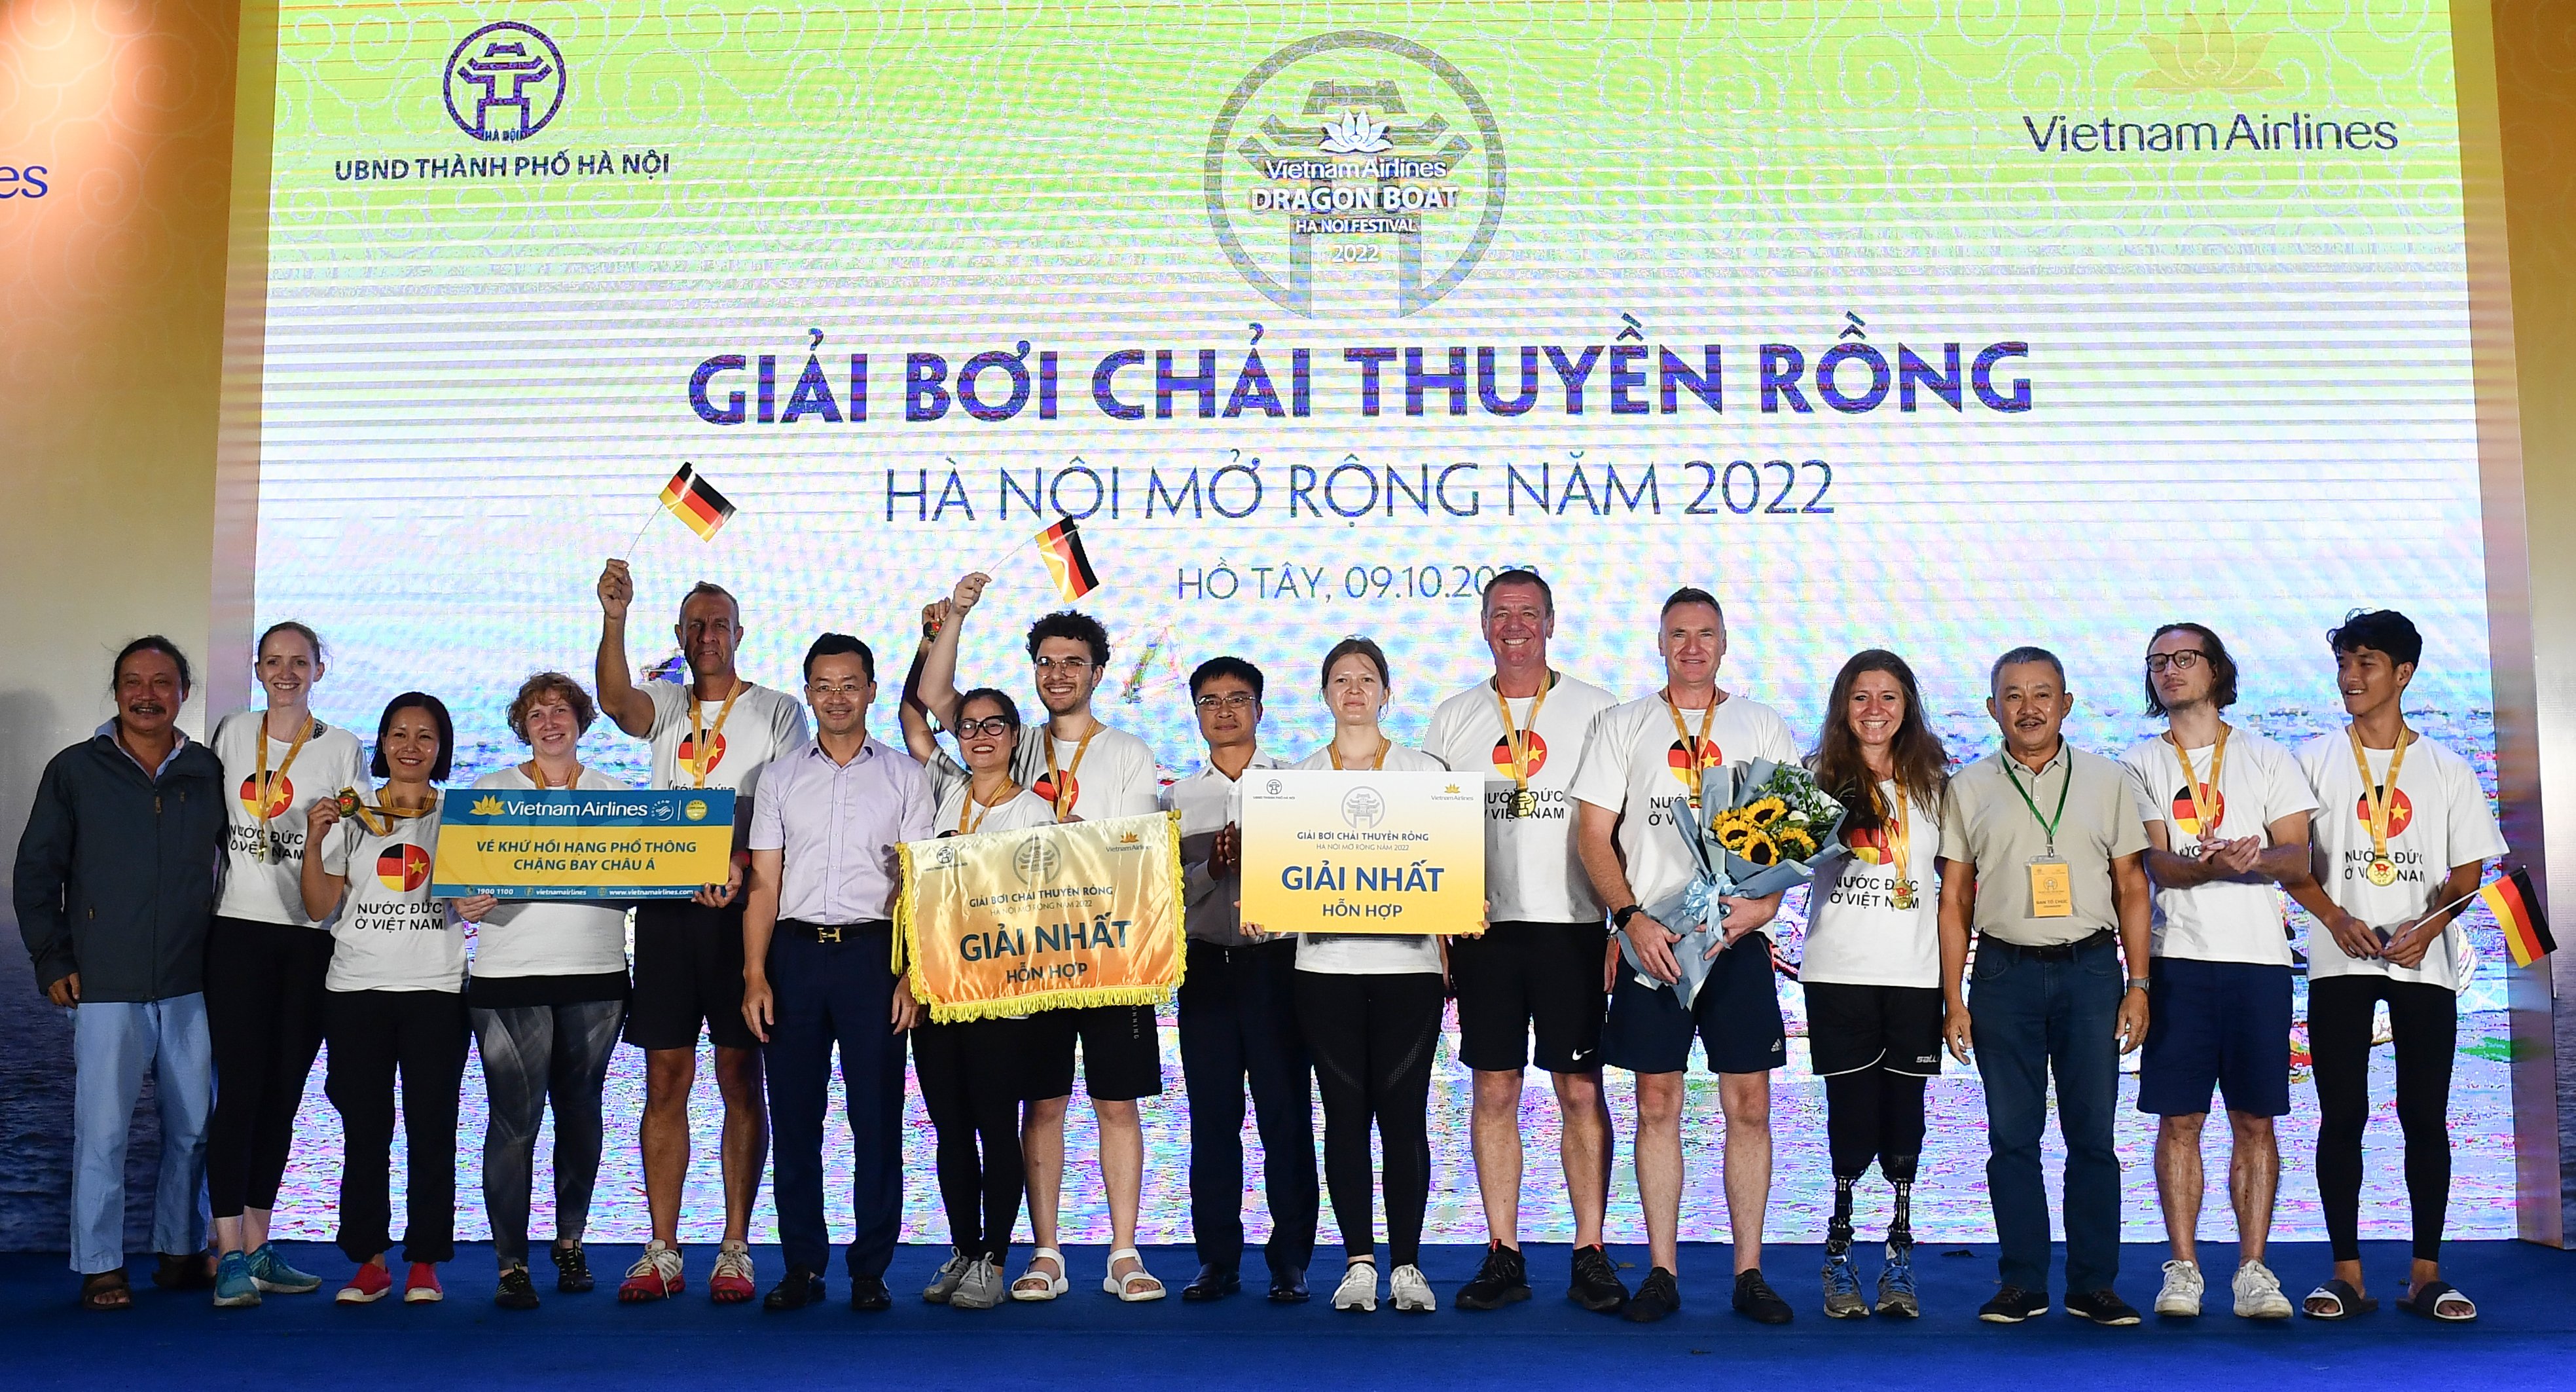 Trao giải cho các đội tham gia Giải Bơi chải thuyền rồng Hà Nội mở rộng năm 2022